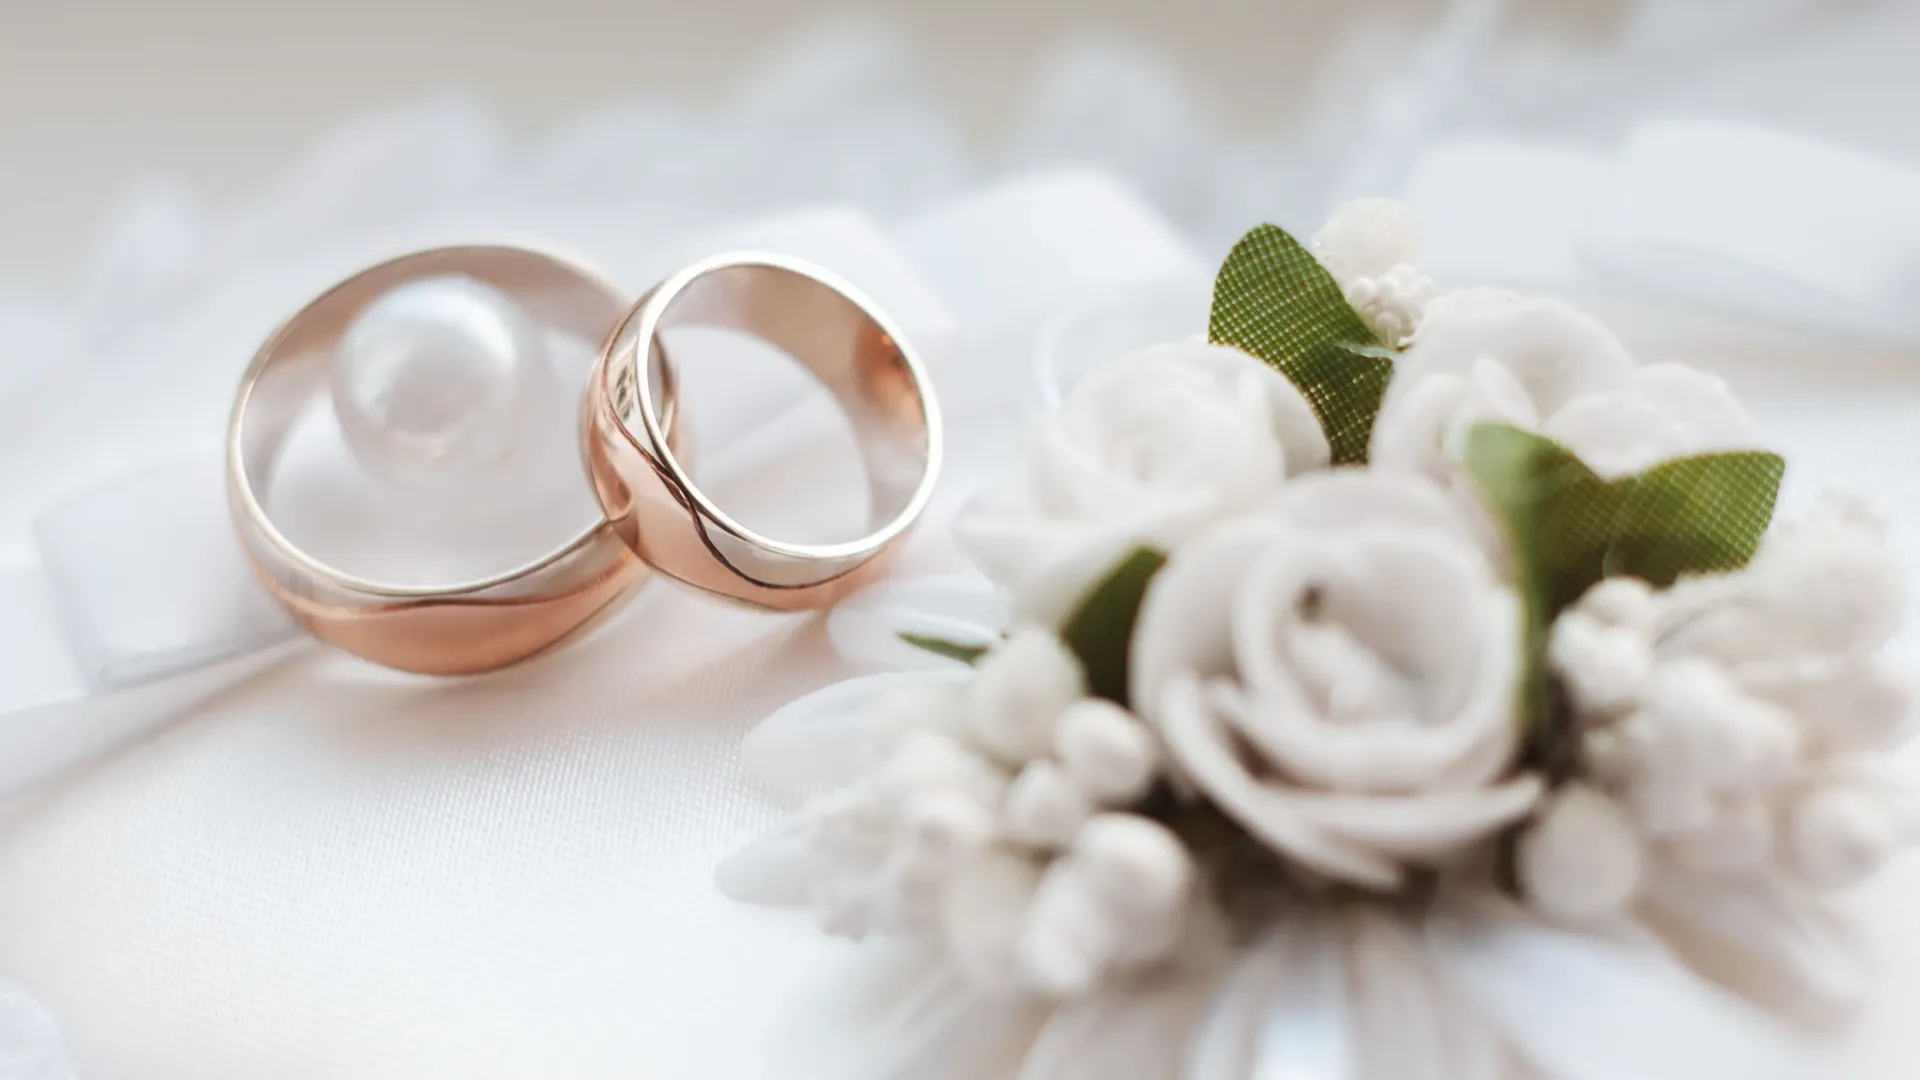 Для кого-то обручальные кольца могут стать кандалами. Фото: arvitalyaart/Shutterstock/Fotodom